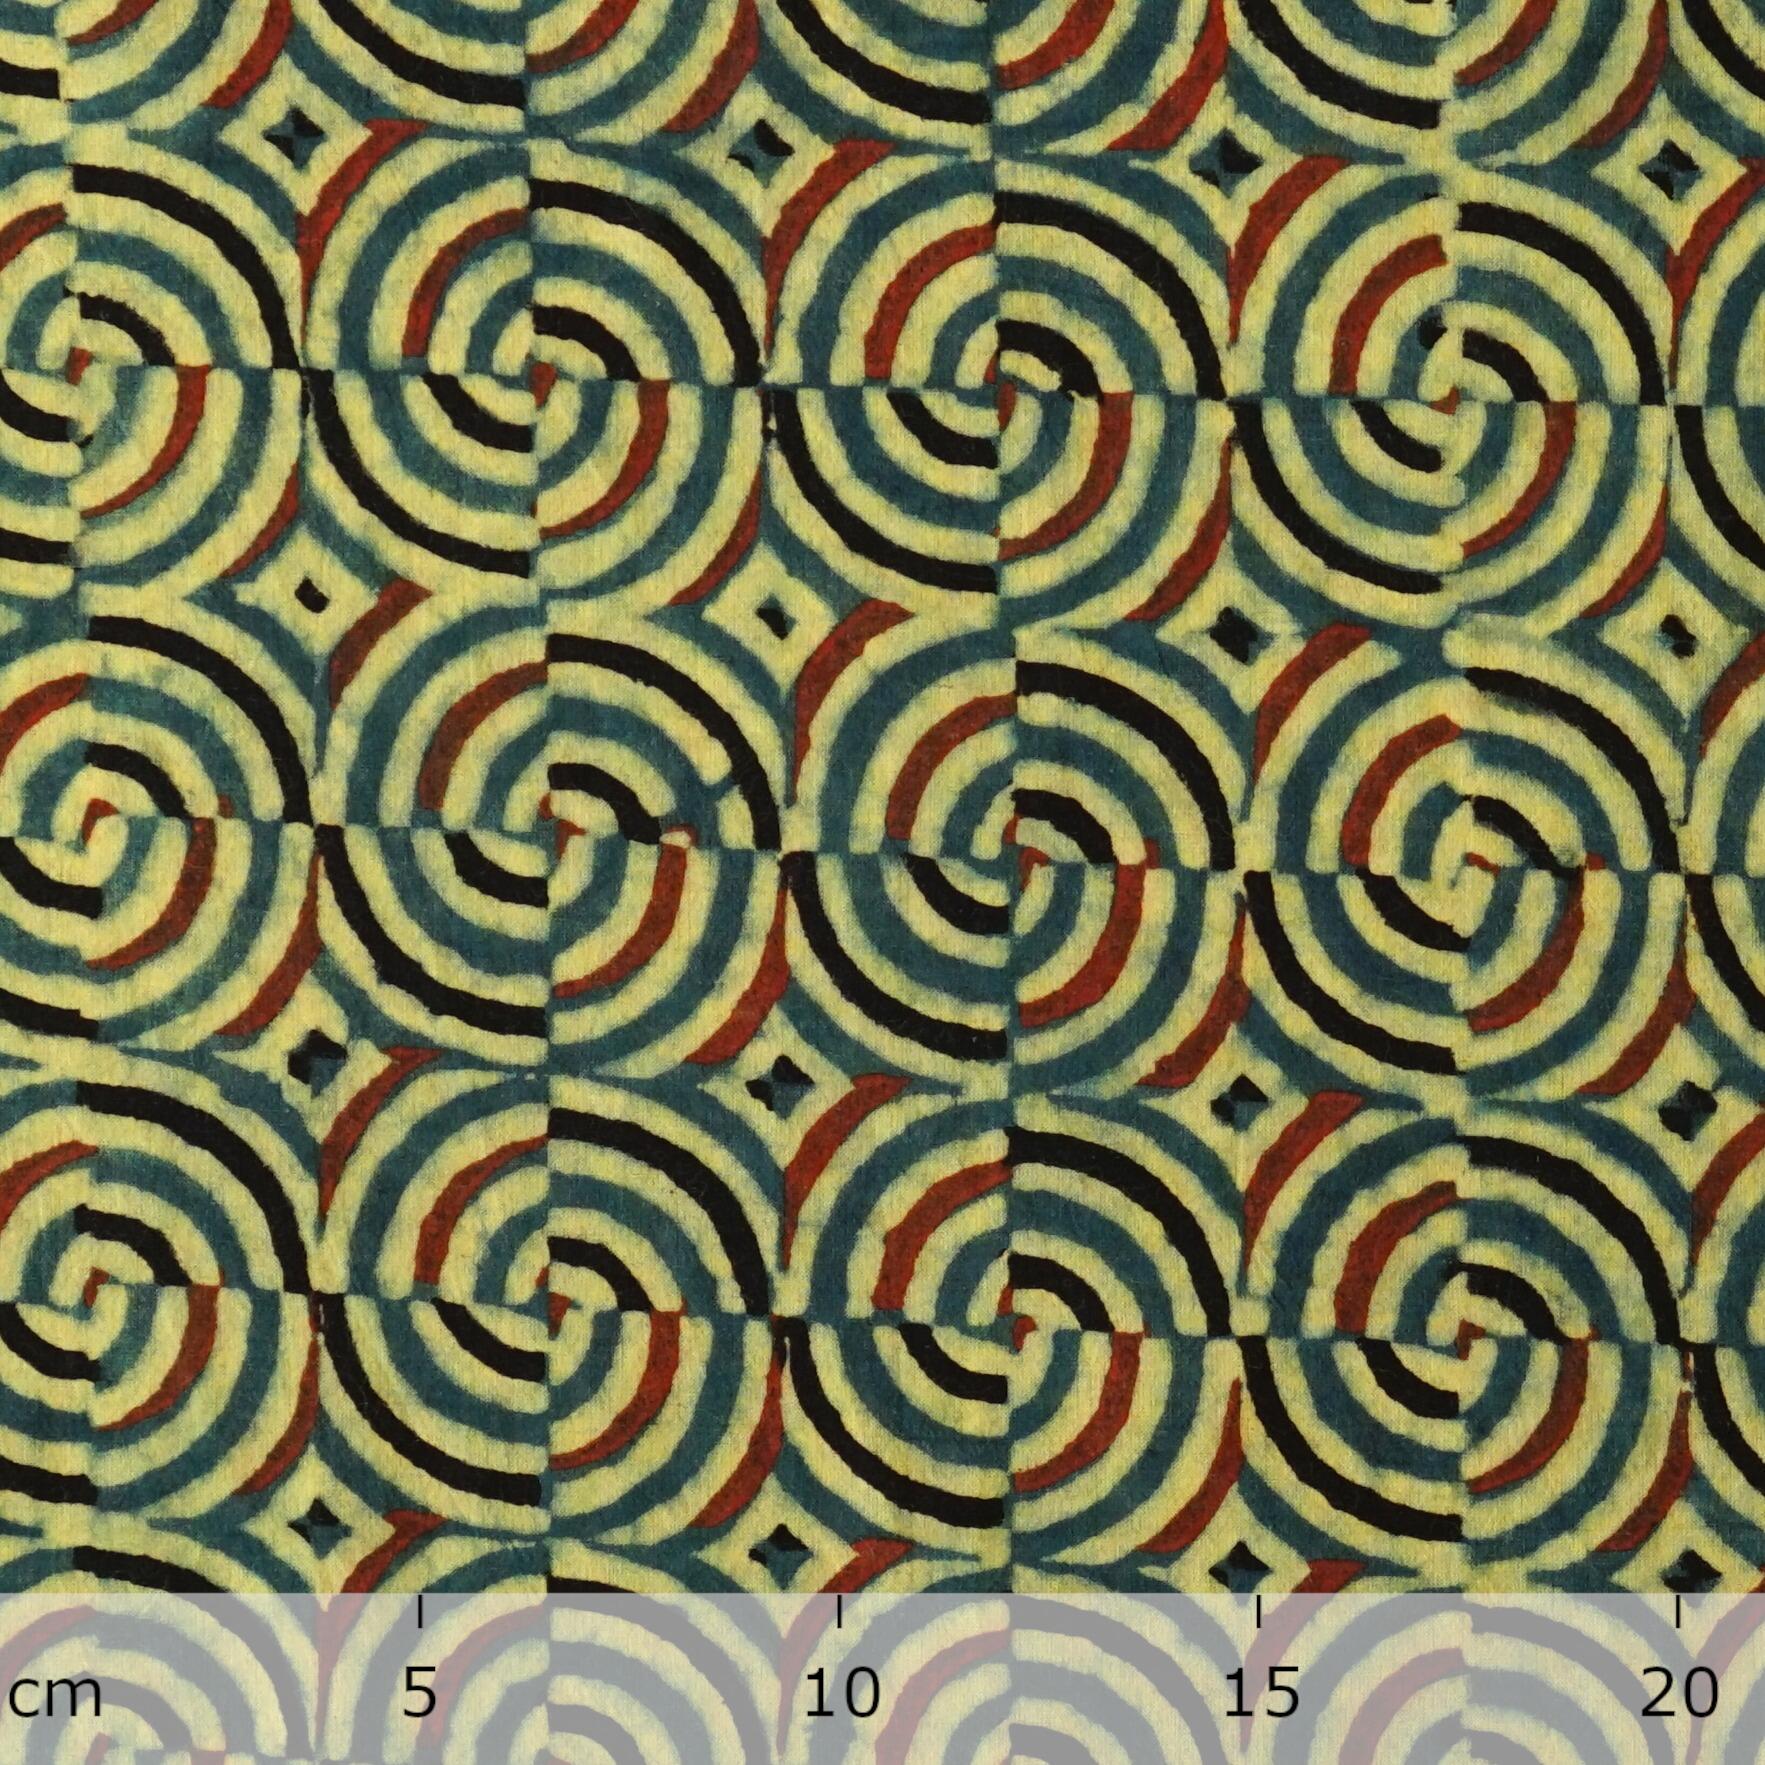 SIK41 - Wood Block-Printed Cotton - Kaleidascope Design - Green Indigo, Yellow, Red & Black Dye - Ruler